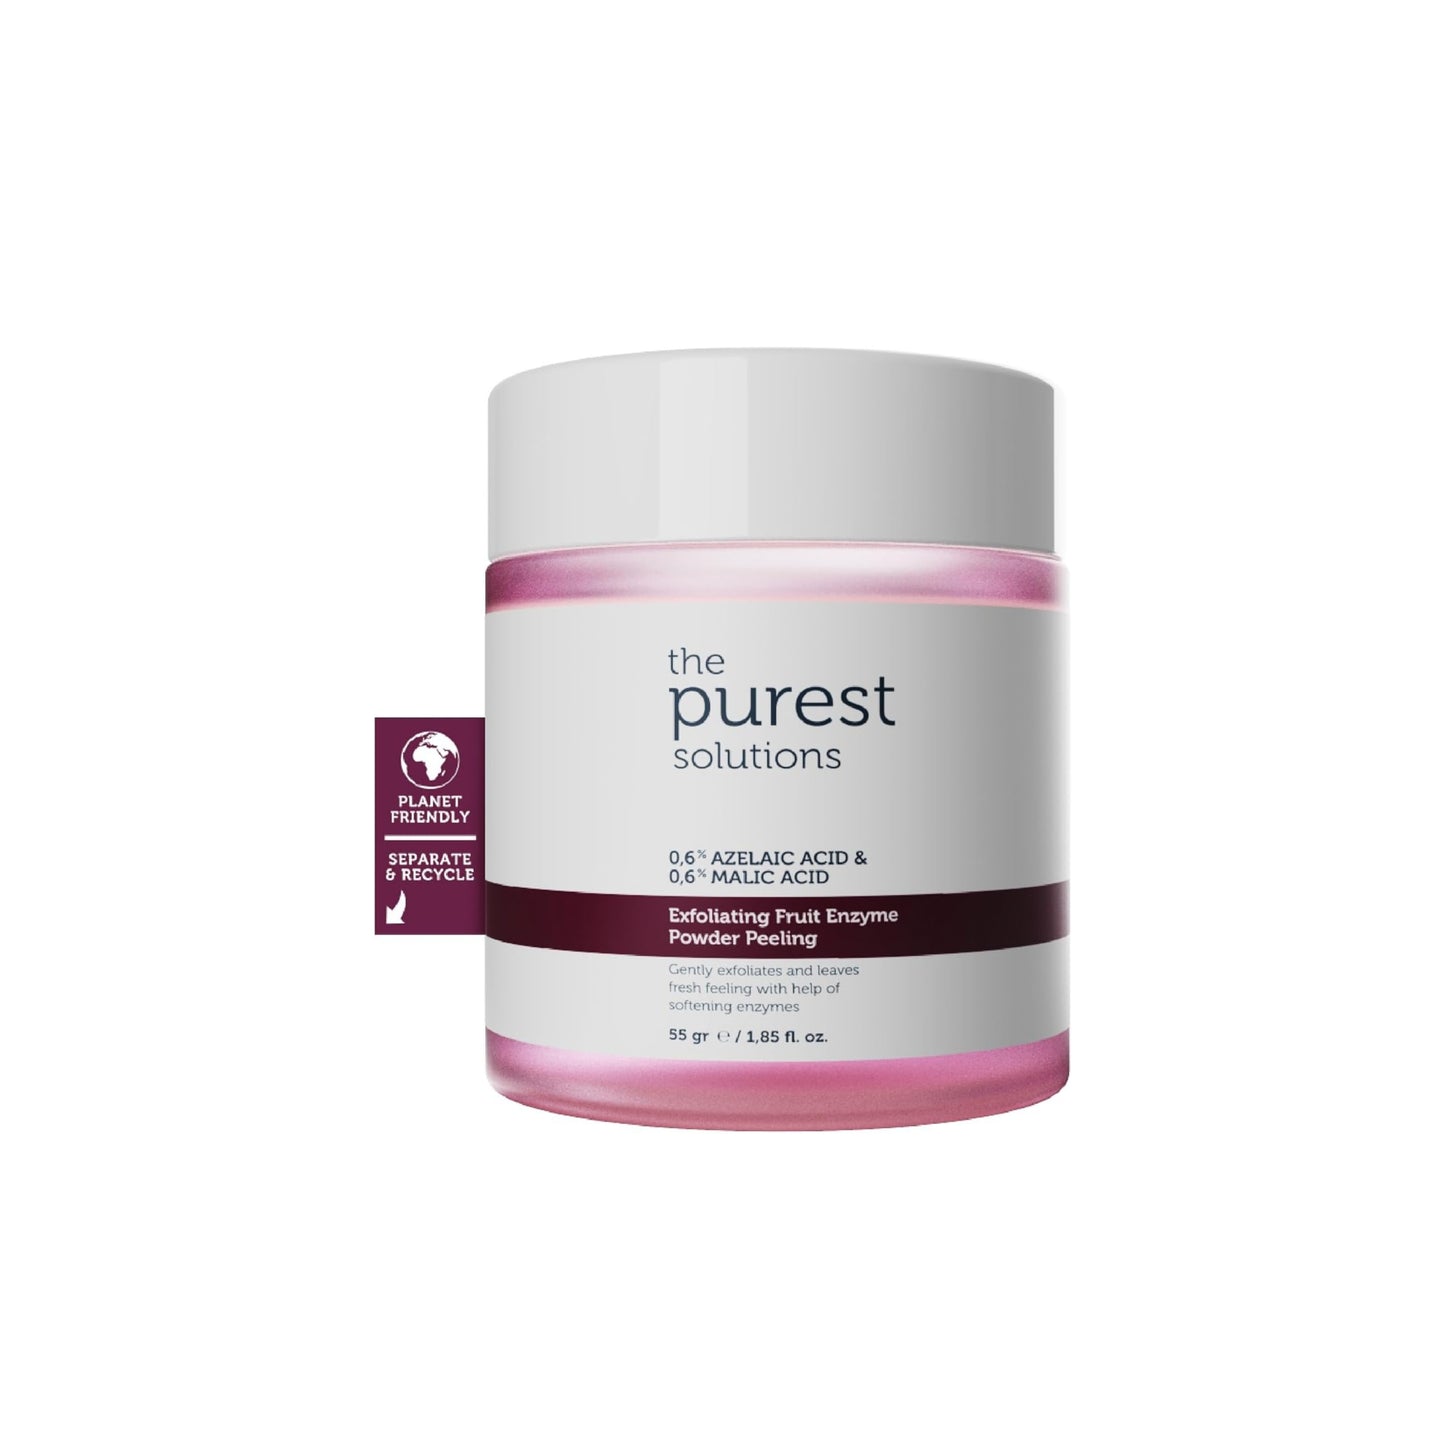 The Purest Solutions | Exfoliating Fruit Enzyme Powder Peeling 0,6% Azelaic Acid & 0,6% Malic Acid